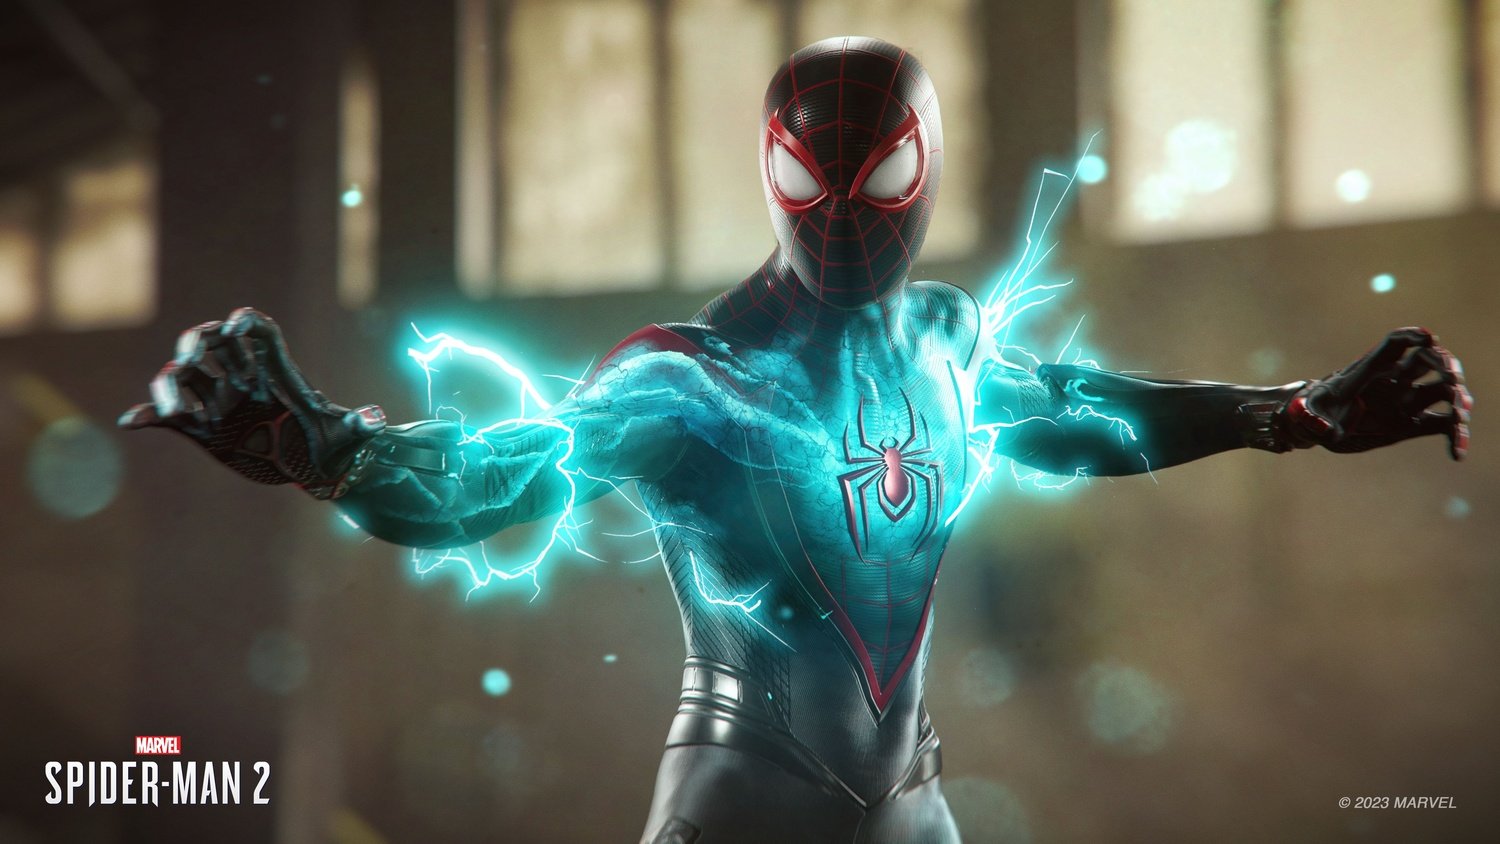 Гра Marvel`s Spider-Man 2 (PS5)фото